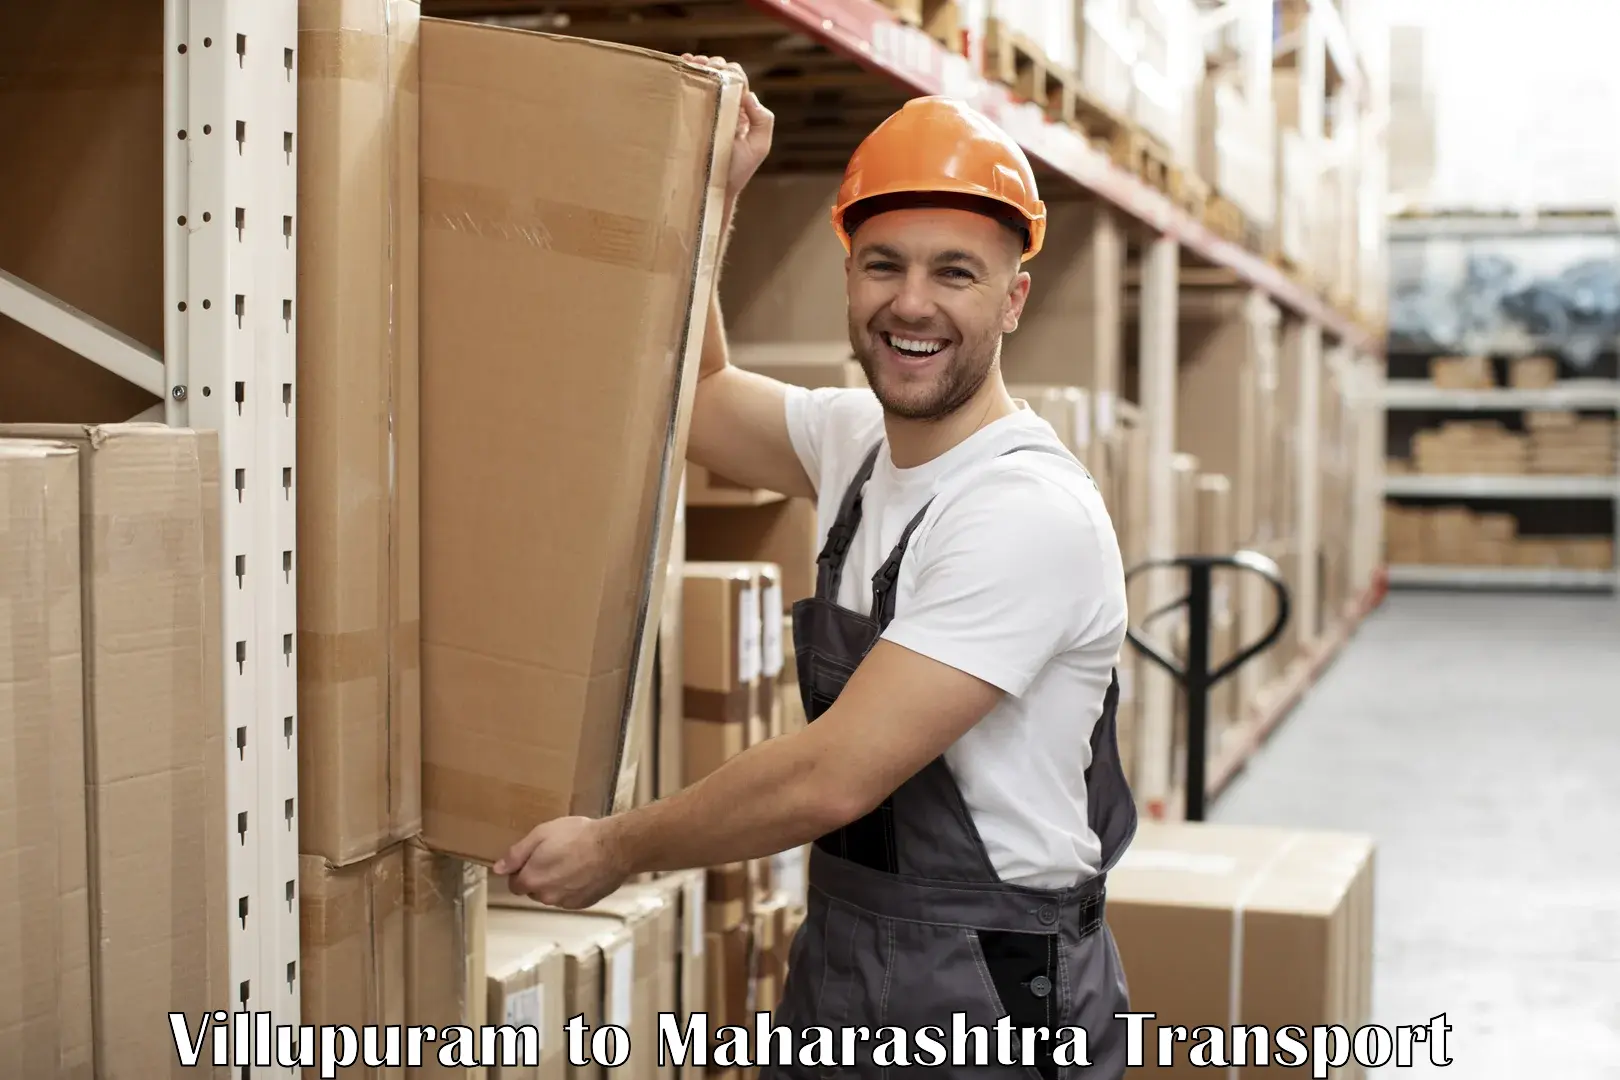 Furniture transport service in Villupuram to Ahmednagar